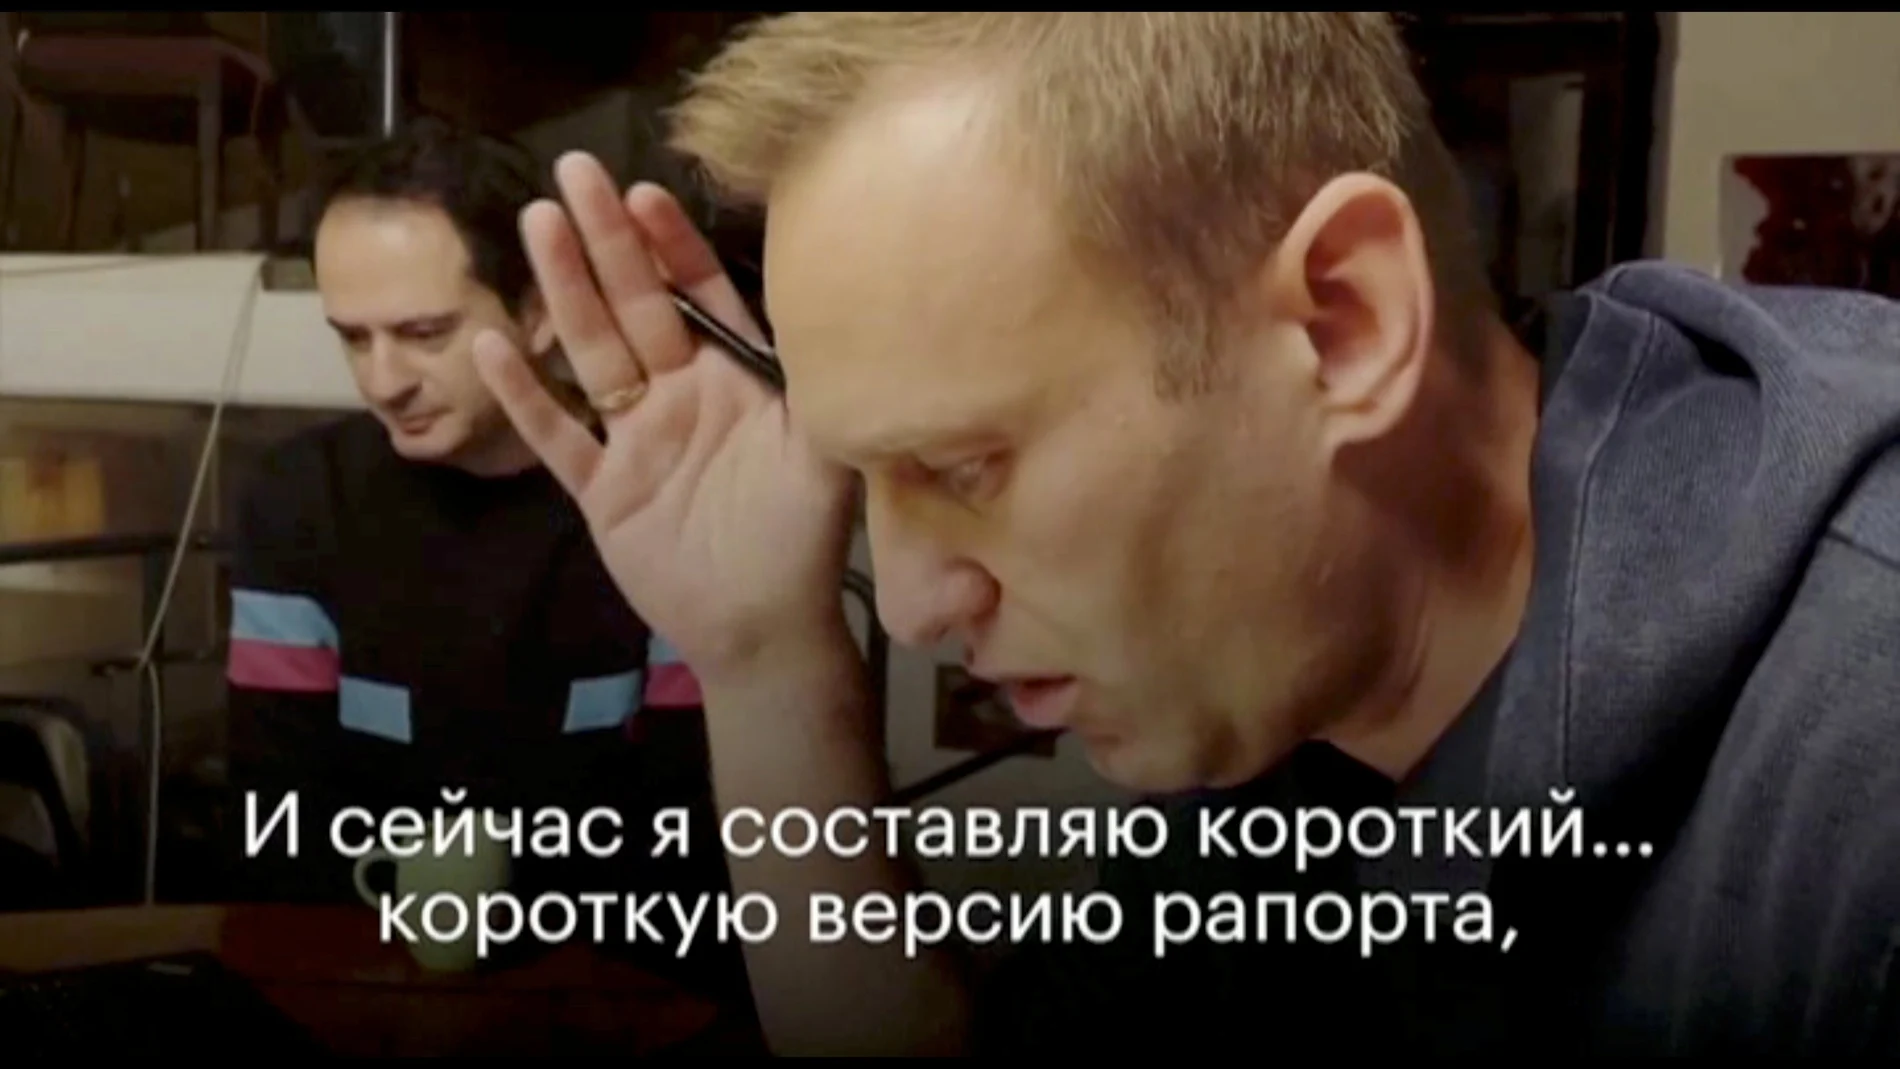 El político opositor ruso Alexei Navalni durante la llamada telefónica en la que engañó a un agente secreto para que revelara detalles del plan fallido para matarlo, en un lugar no revelado en Alemania, en una imagen fija obtenida del video